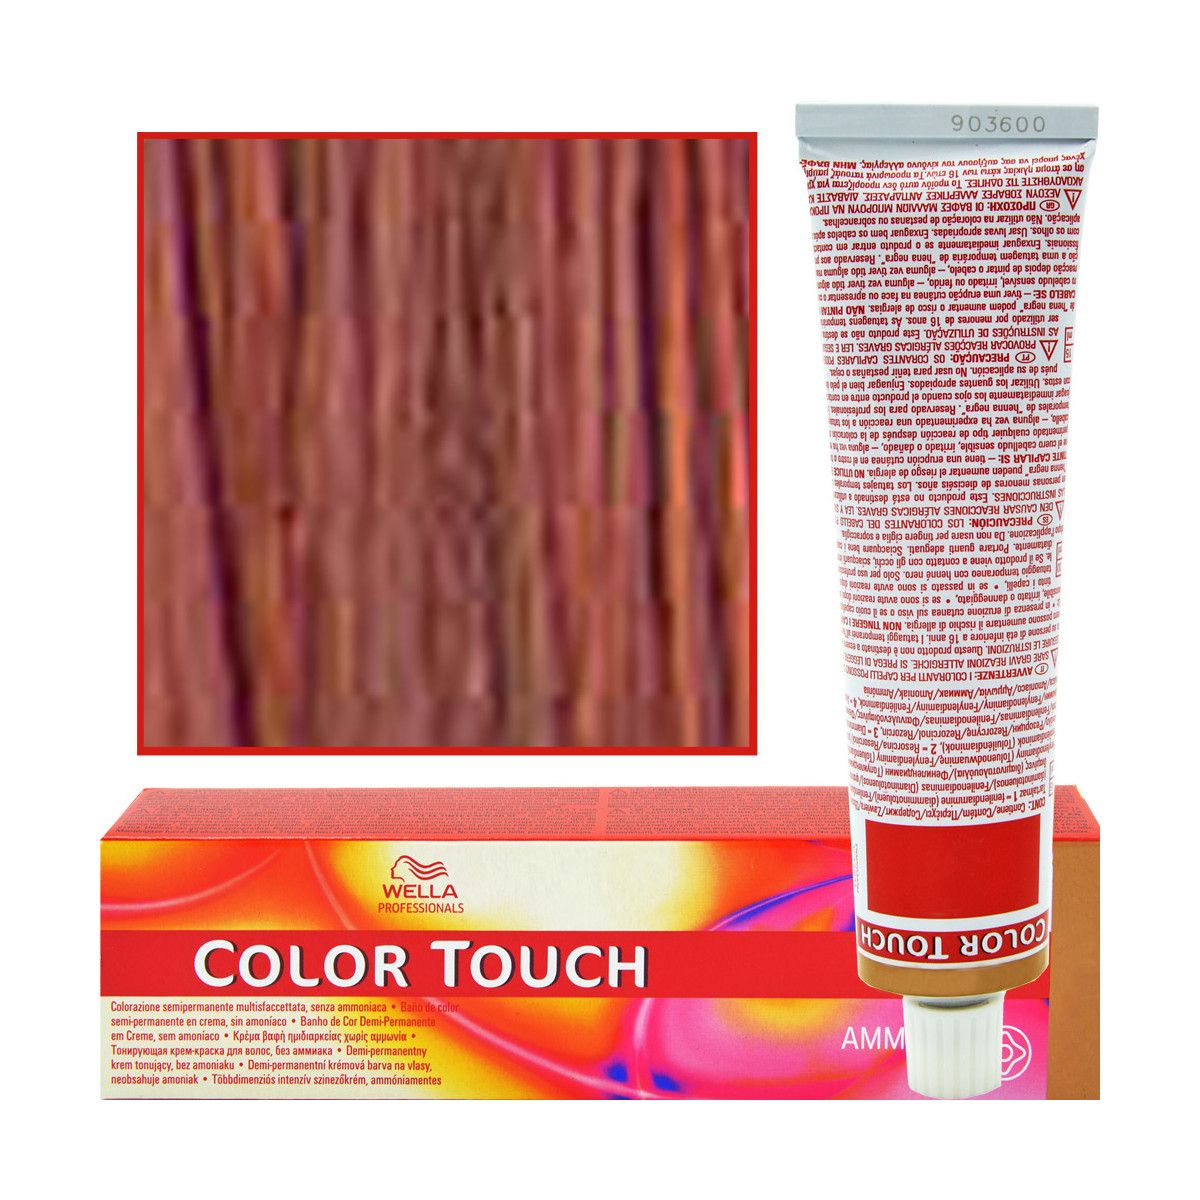 Wella Color Touch profesjonalna farba do włosów 60 ml kolor 66/45 Satynowa Czerwień